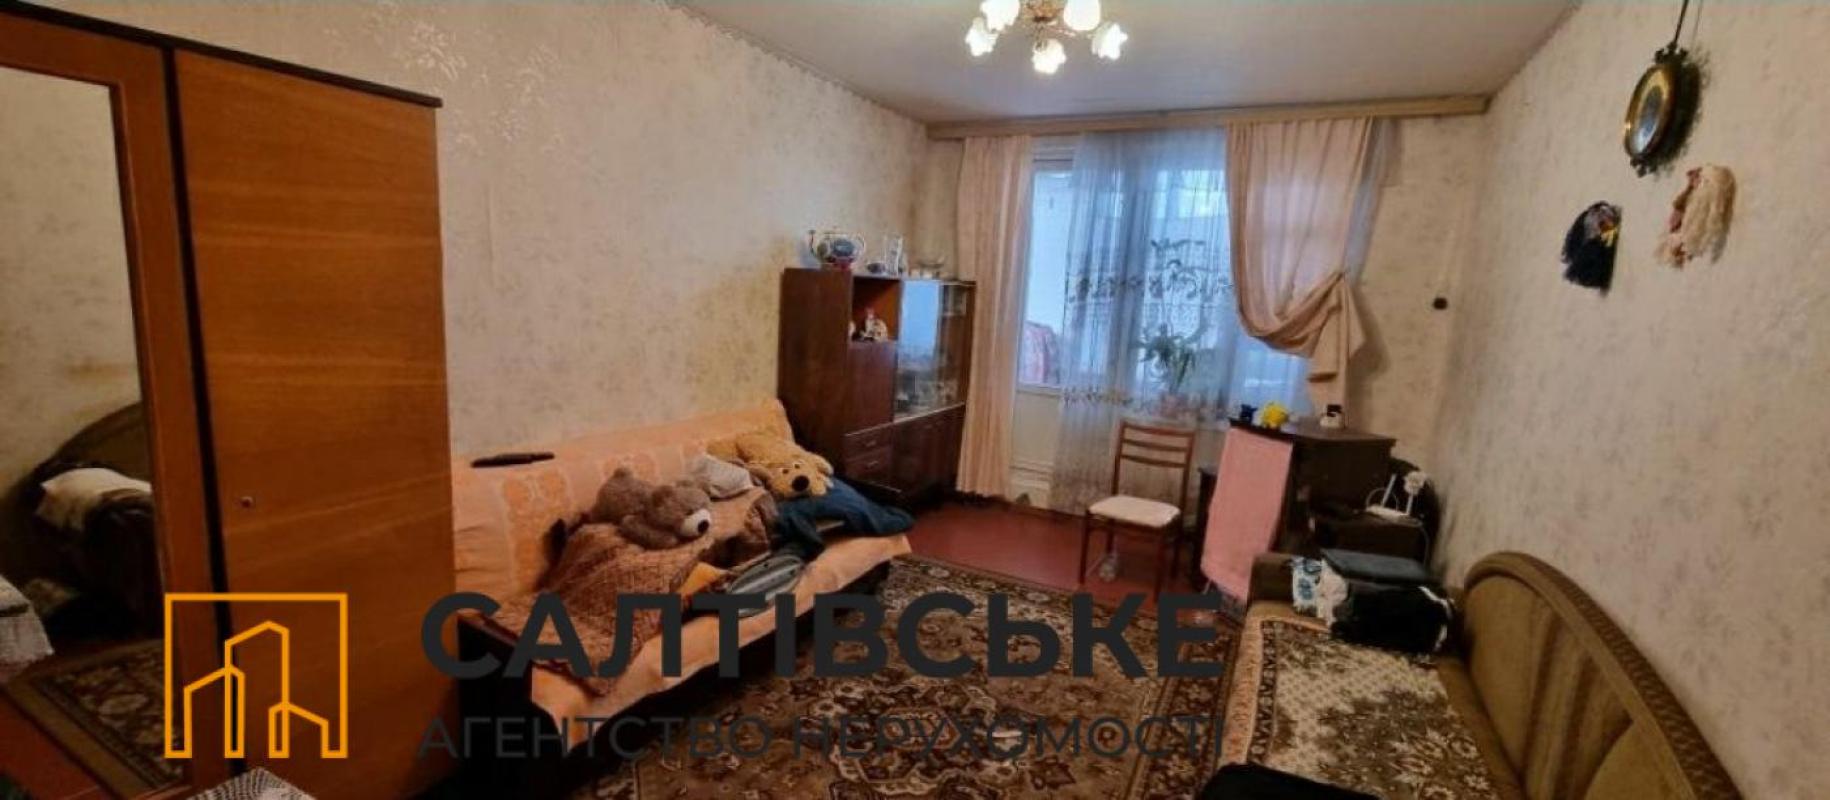 Sale 1 bedroom-(s) apartment 34 sq. m., Saltivske Highway 139